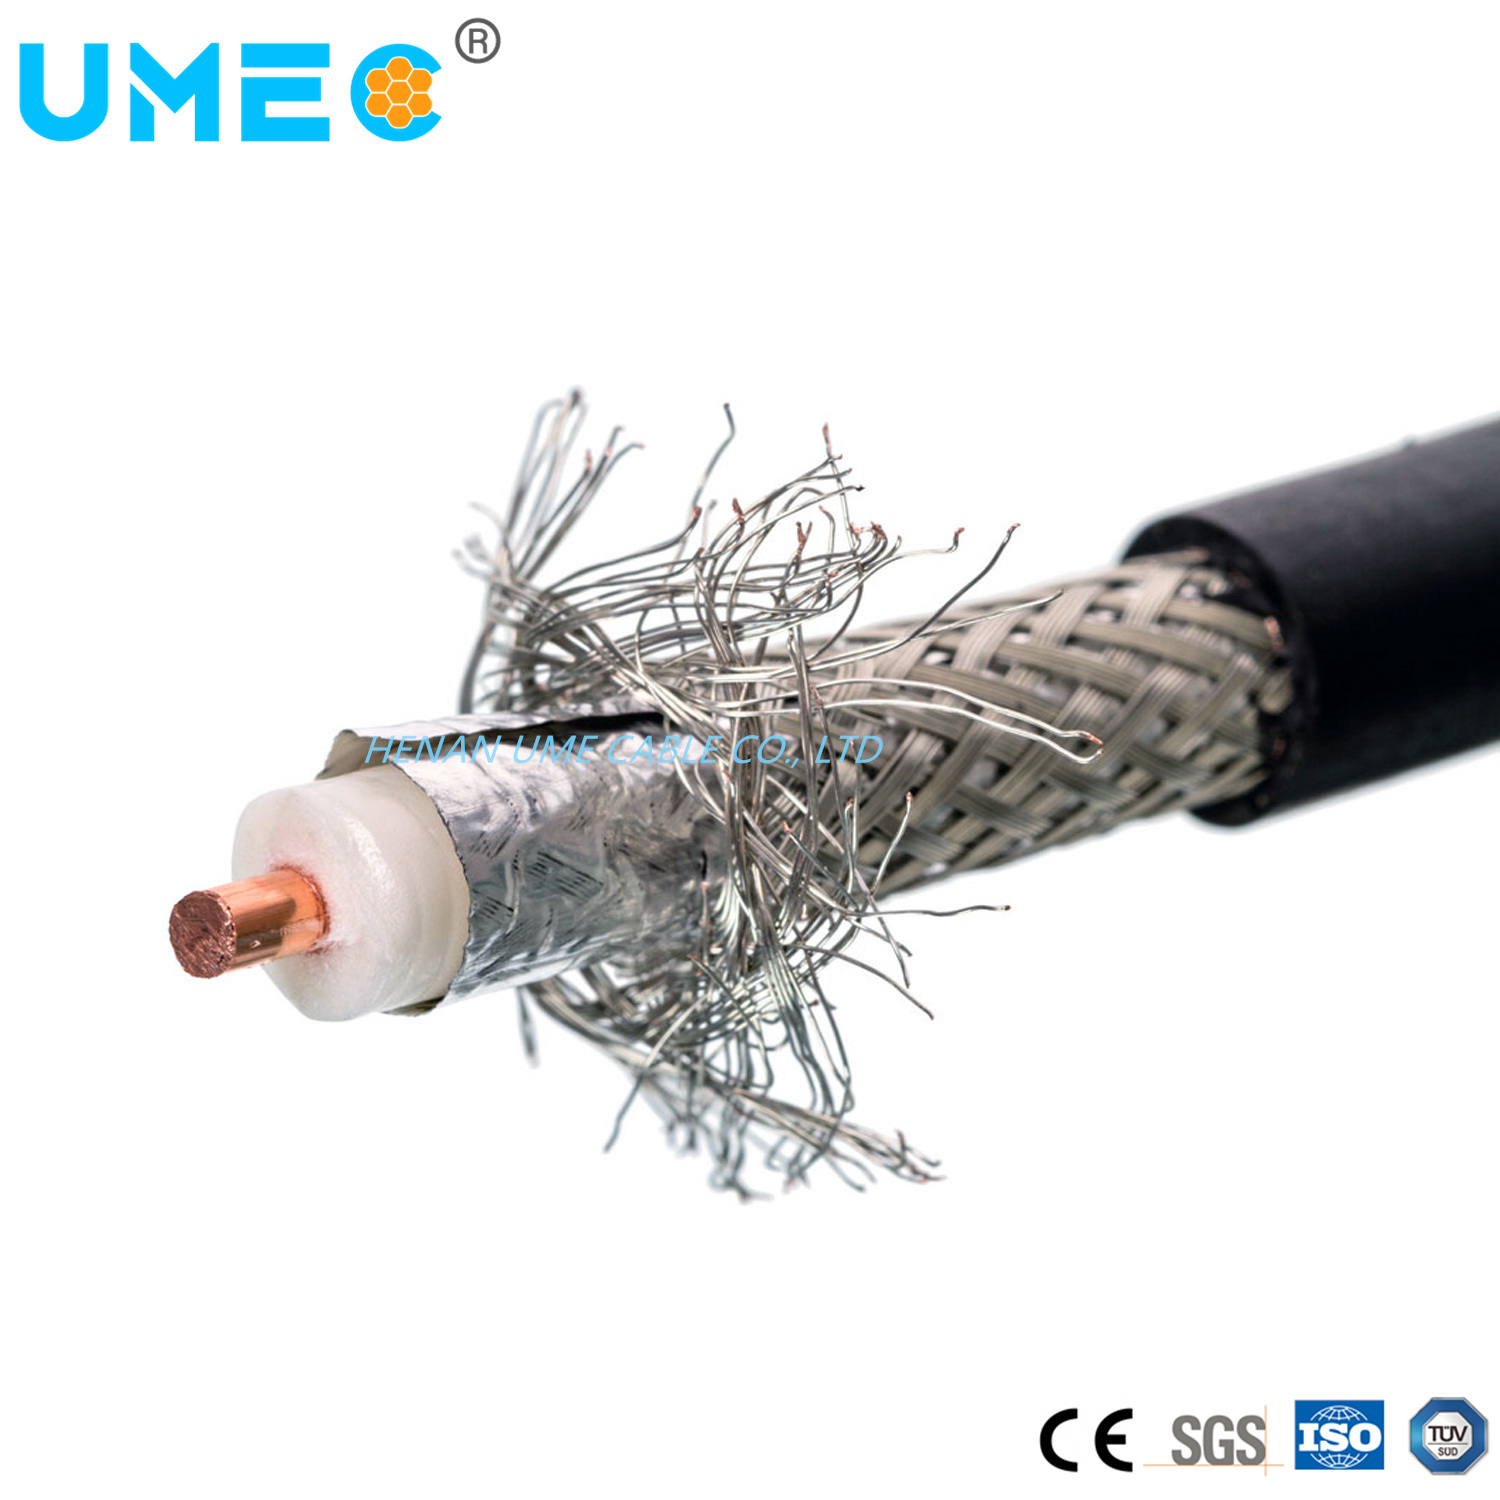 
                Оптовая торговля RG6 коаксиальный кабель RG-6 / CCS коммуникационный кабель RG6 кабель питания цена
            